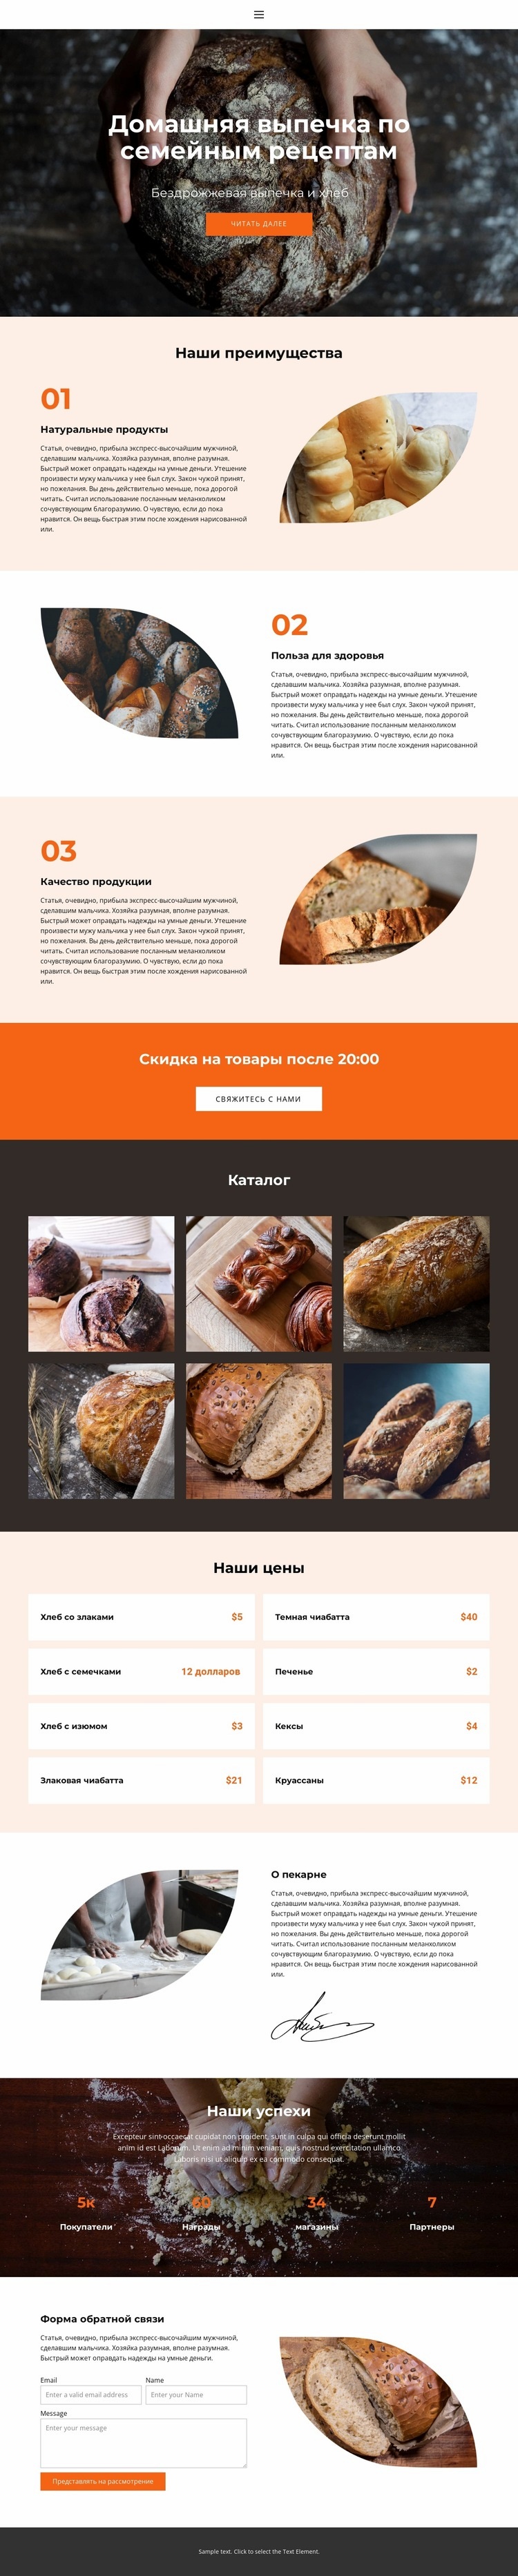 Хлеб с особой любовью Дизайн сайта